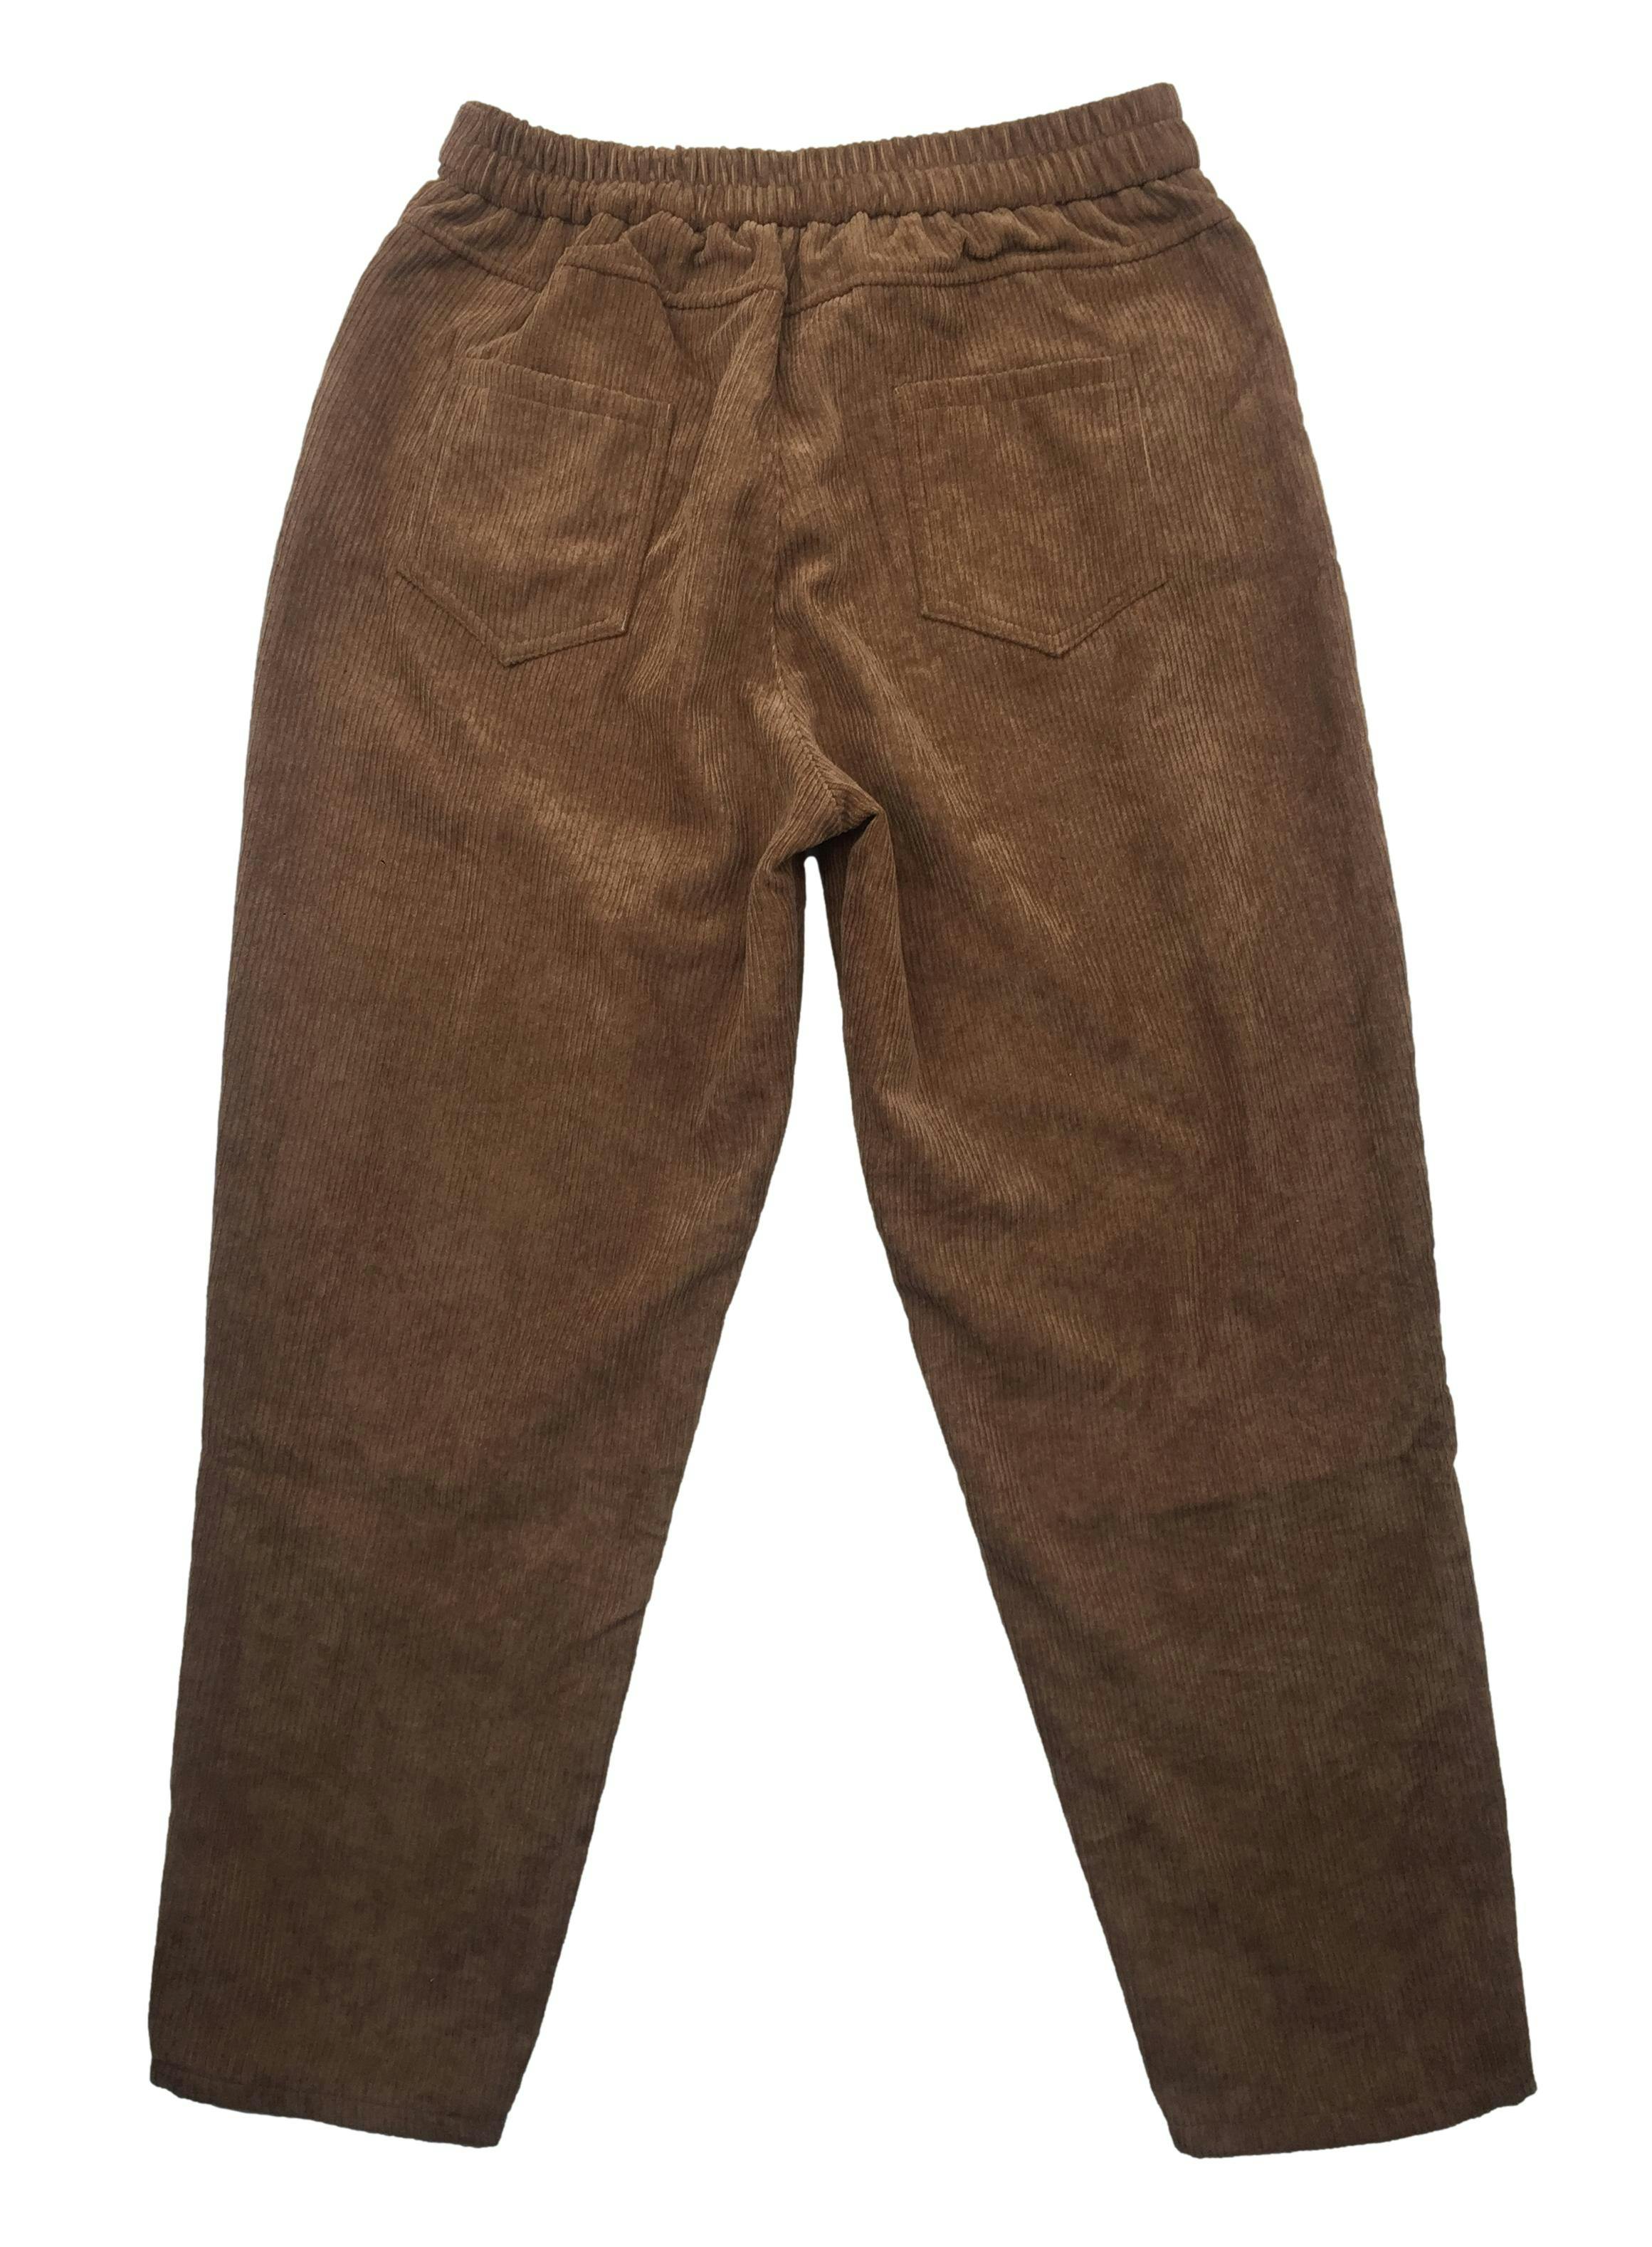 Pantalón de corduroy marrón, pretina elástica y con bolsillos. Cintura 75cm Tiro 28cm Largo 95cm